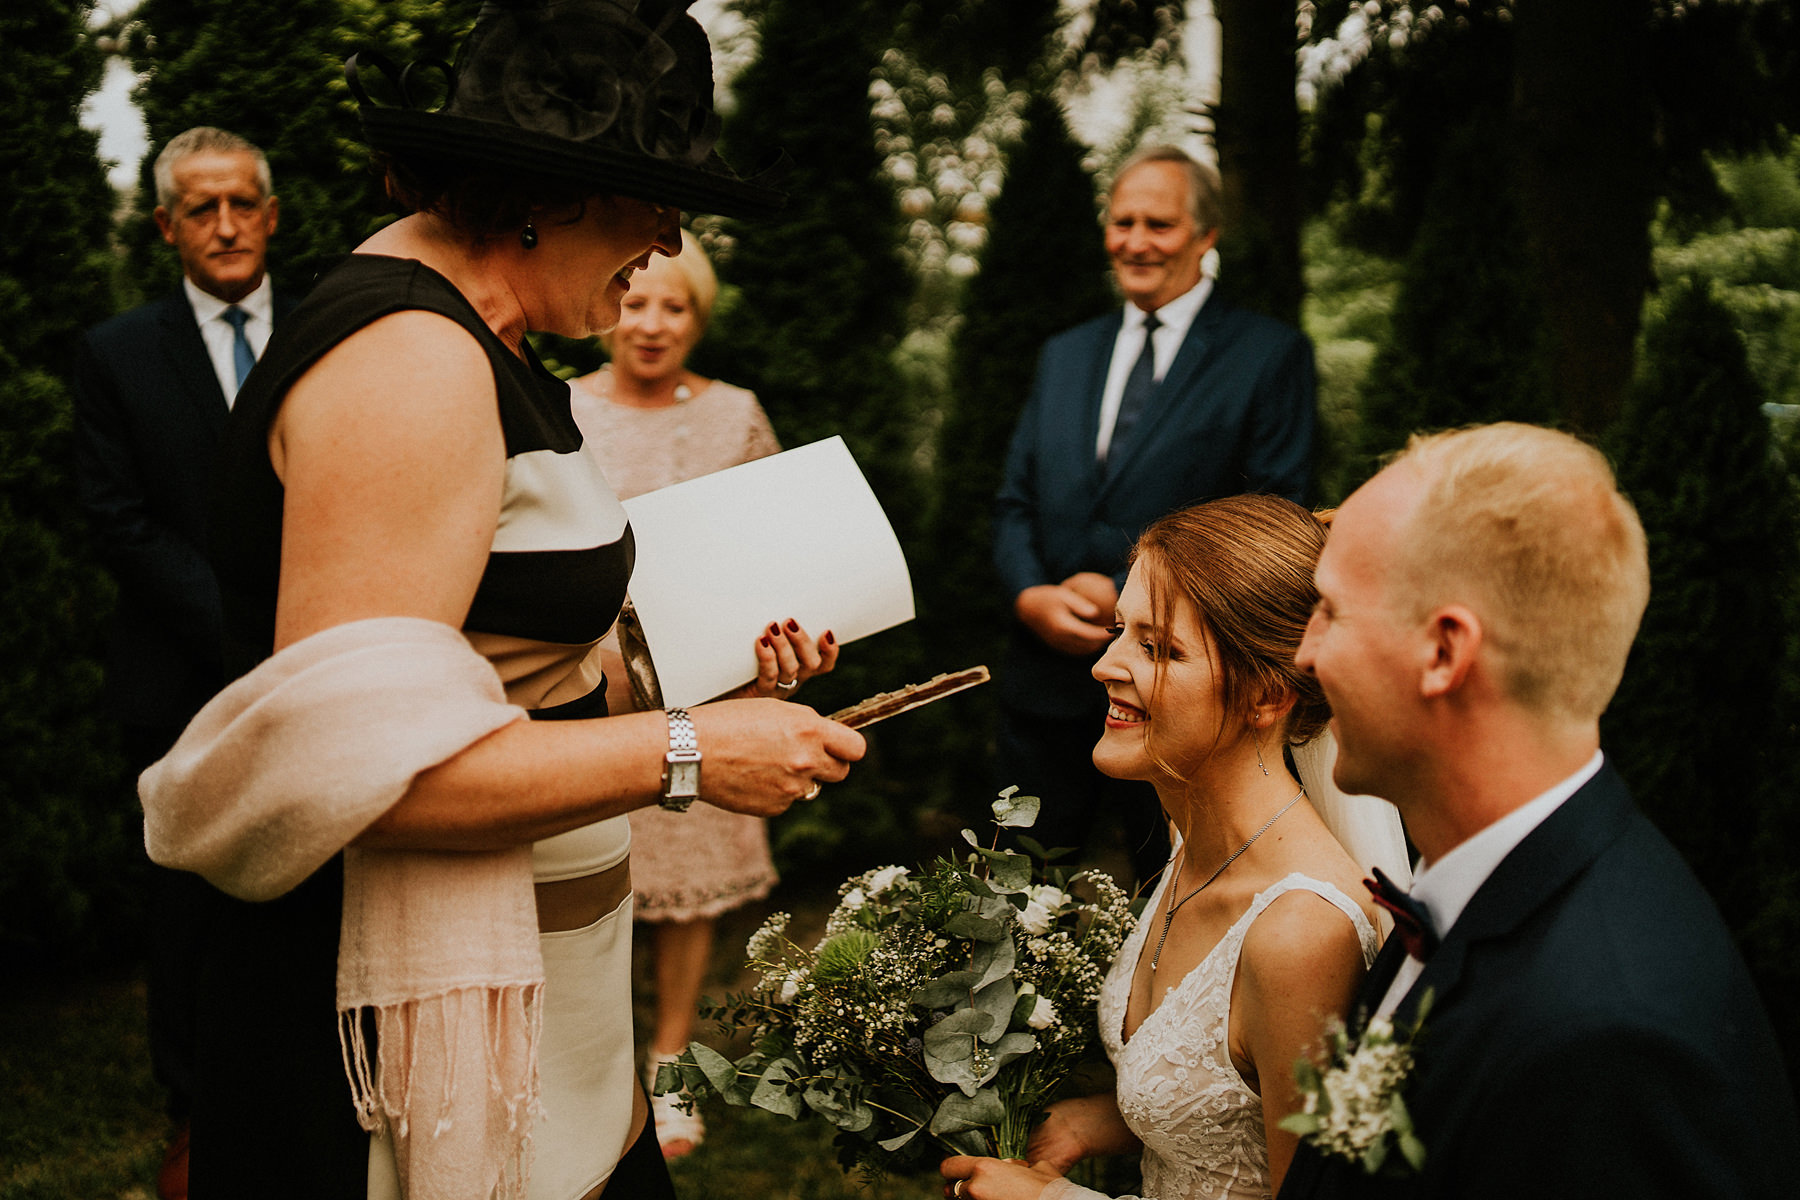 020 stodola ciezkowice wesele kasna dolna fotograf slubny krakow wedding photographer karol nycz